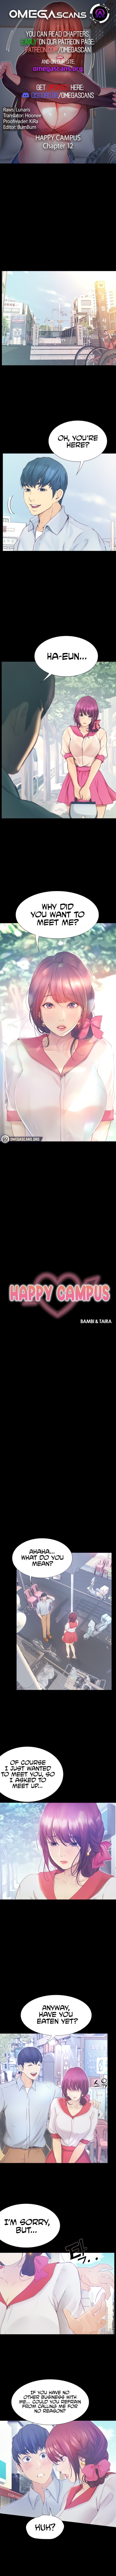 happy-campus-chap-12-0